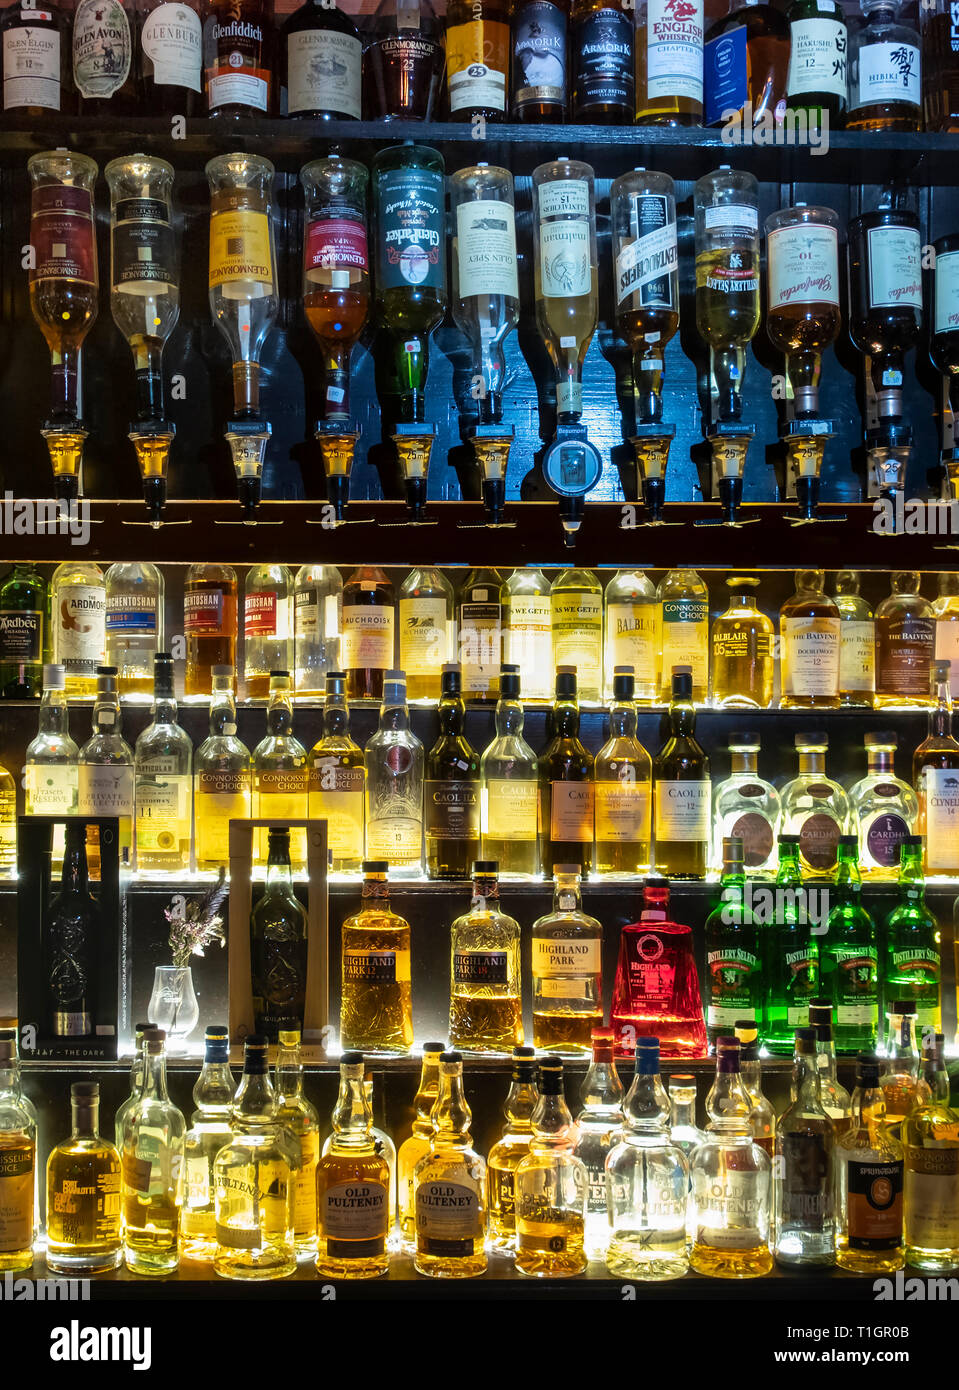 Una amplia selección de whiskys escoceses iluminado en estantes de vidrio y en óptica, Escocia Foto de stock